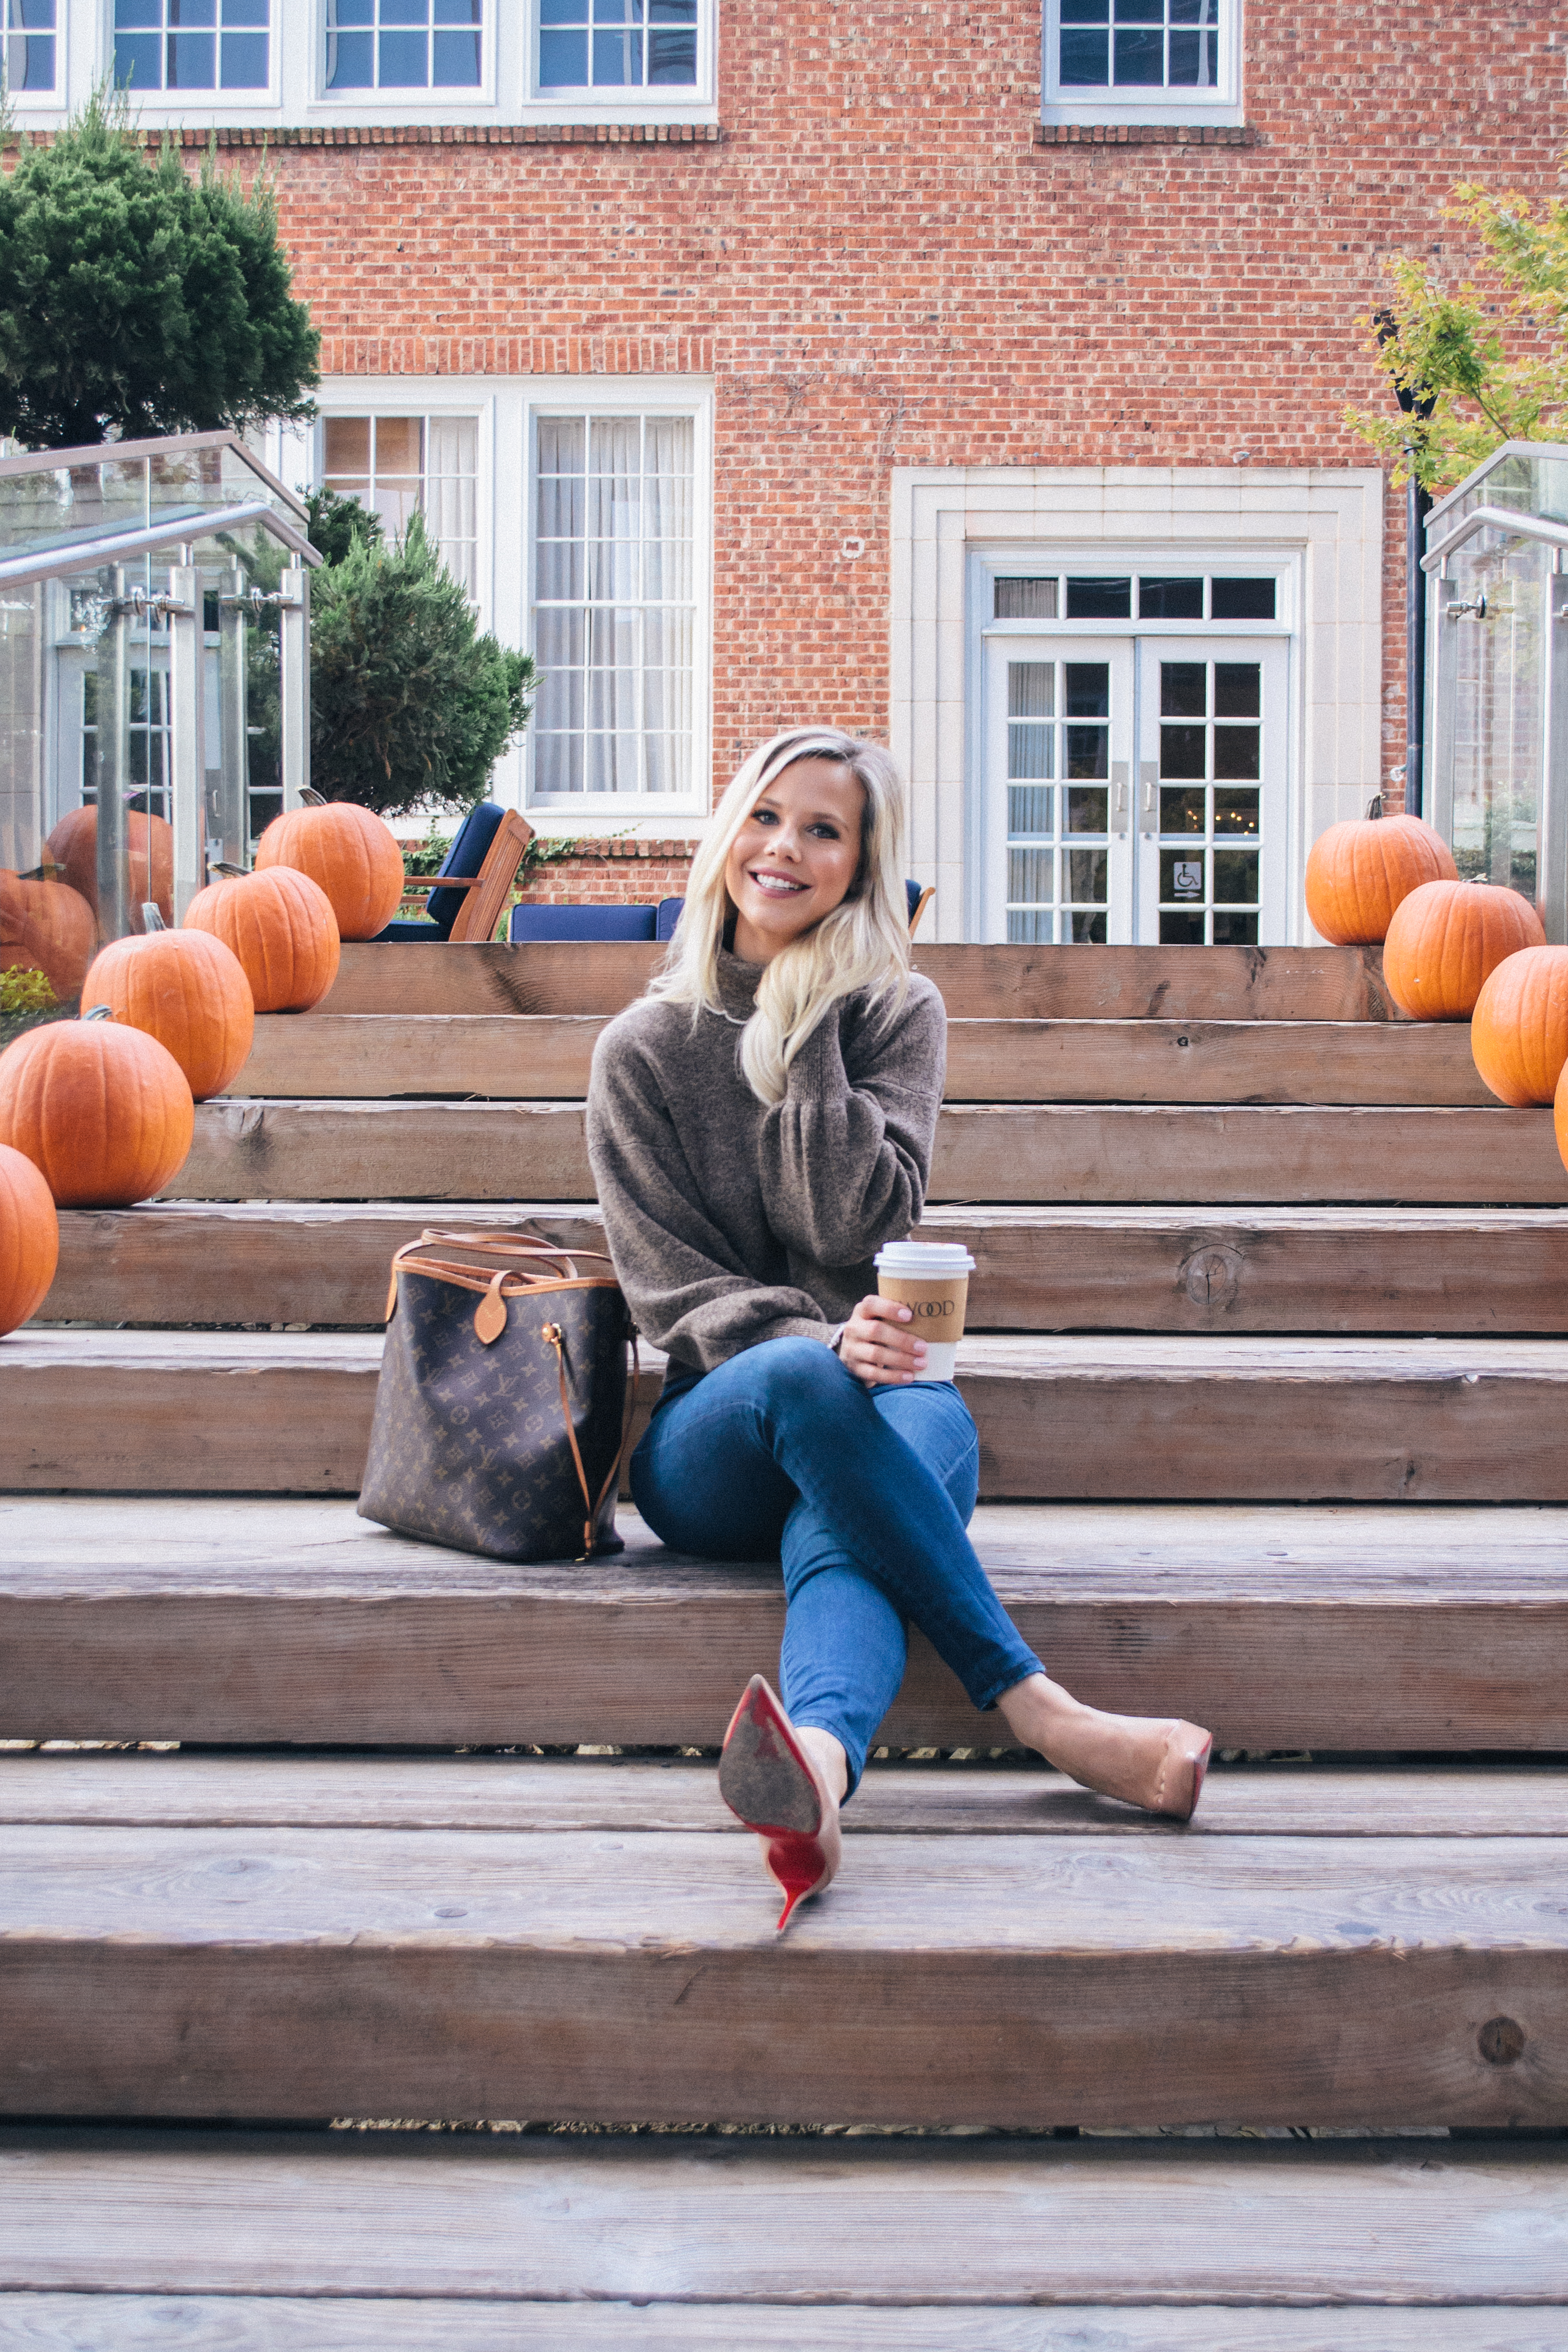 Adorable pumpkin patch outfit #fall #sweater #pumpkinpatch